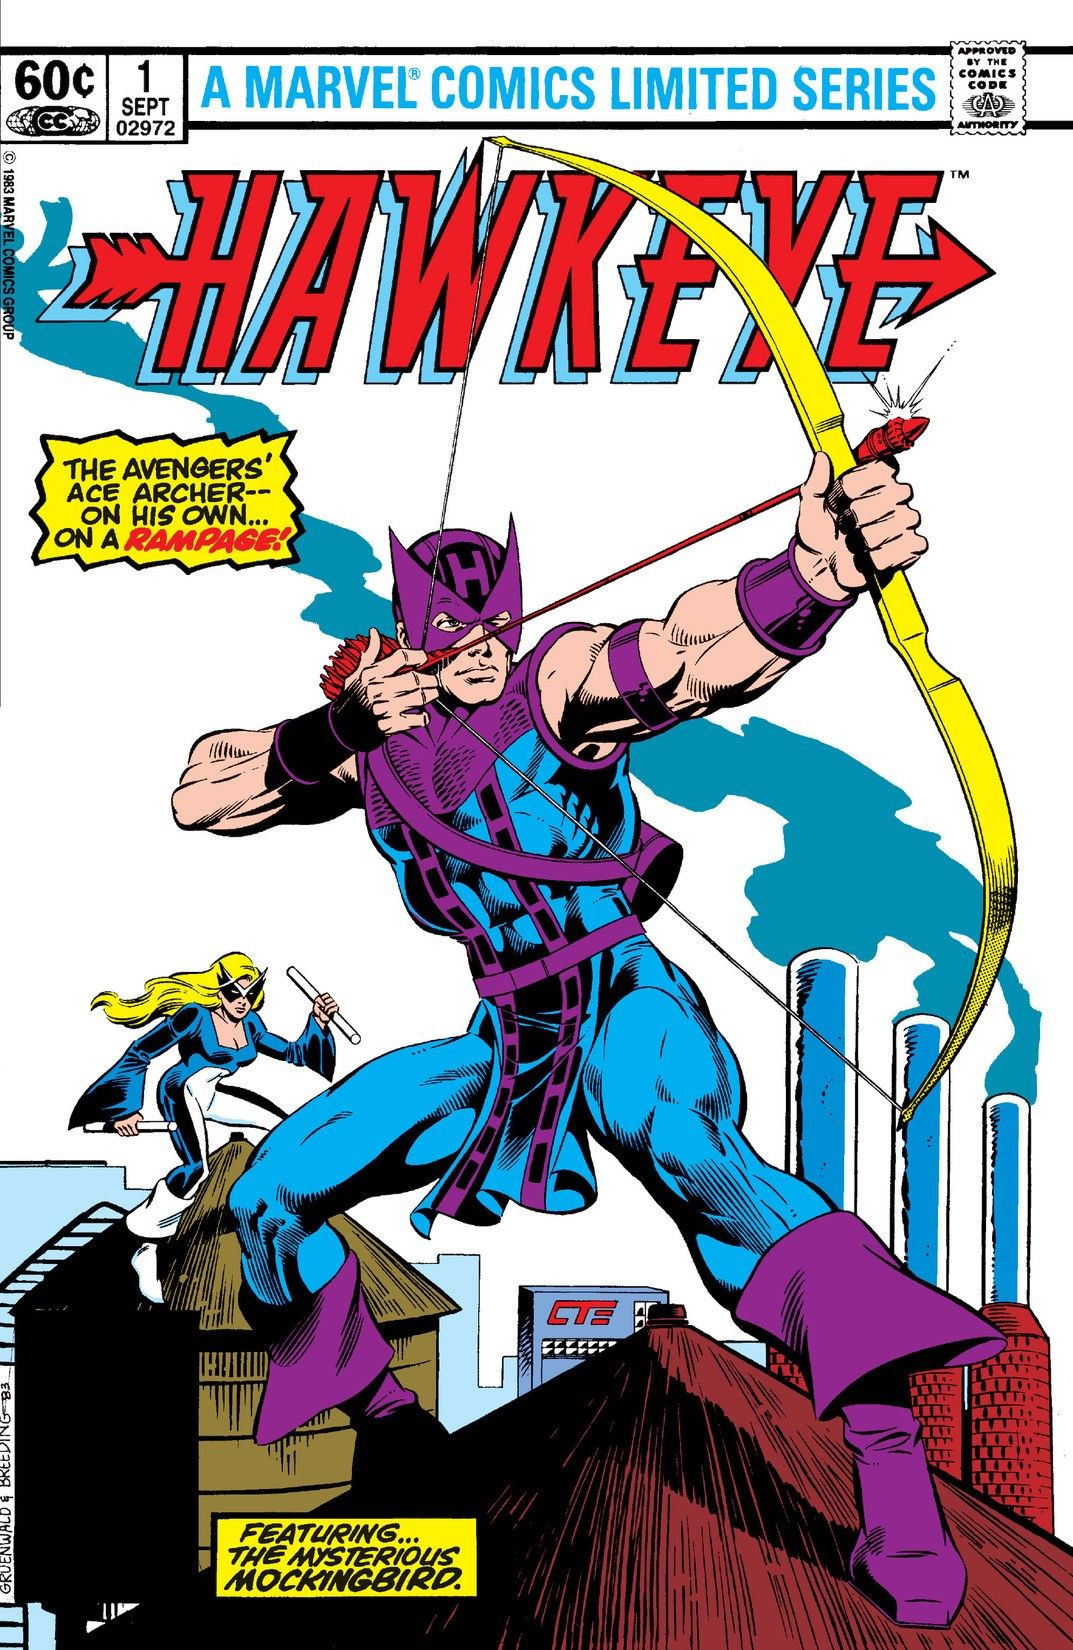 Hawkeye Vol 1 1 height=192